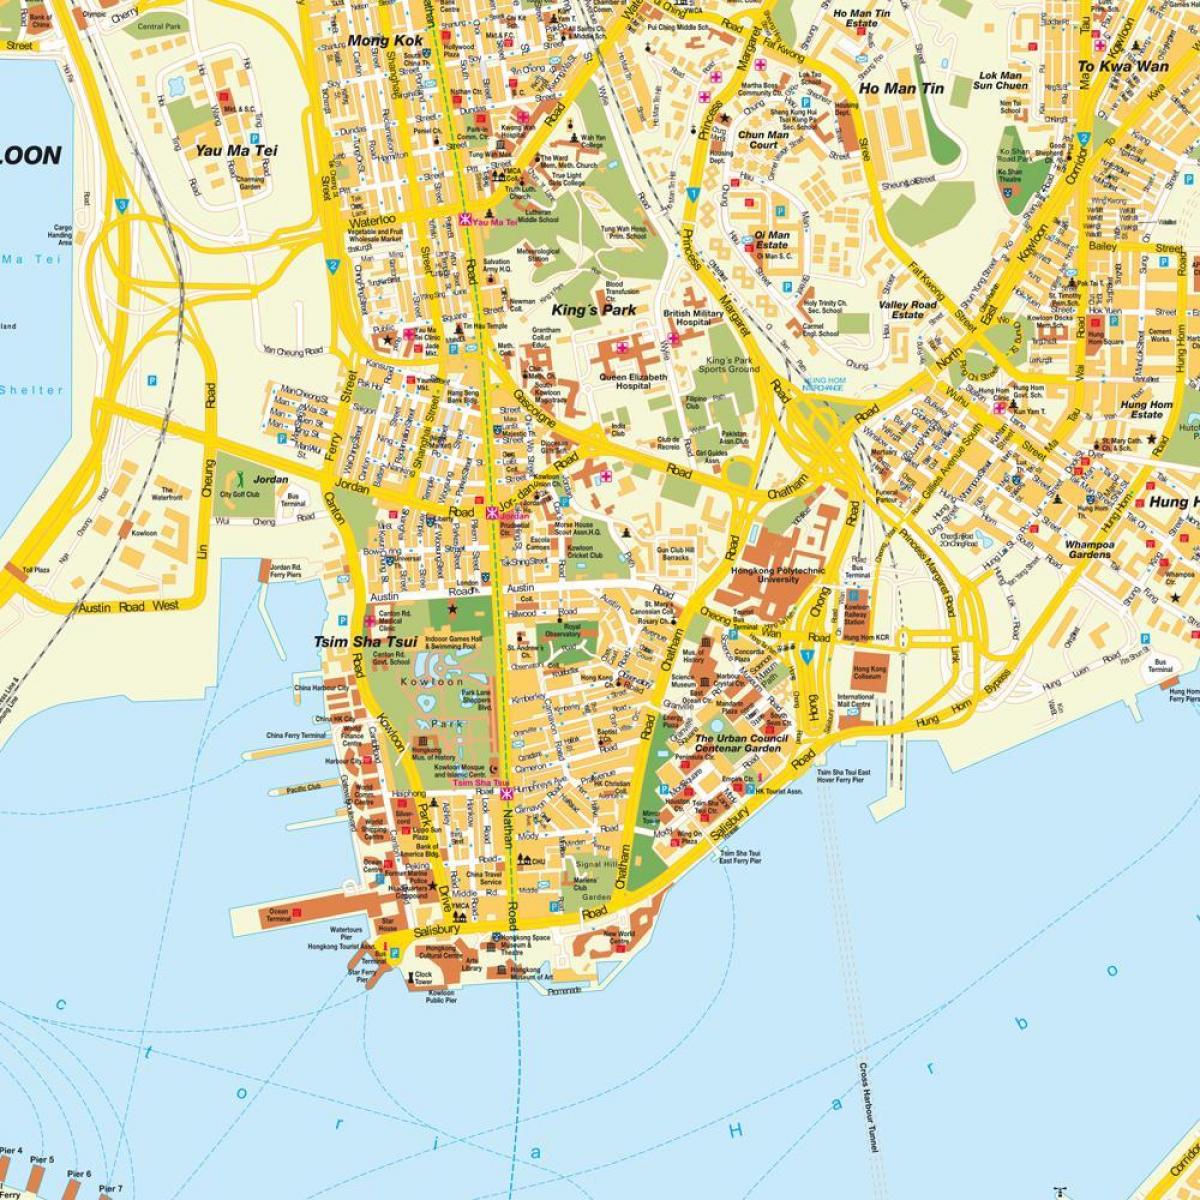 Hong Kong city kaart